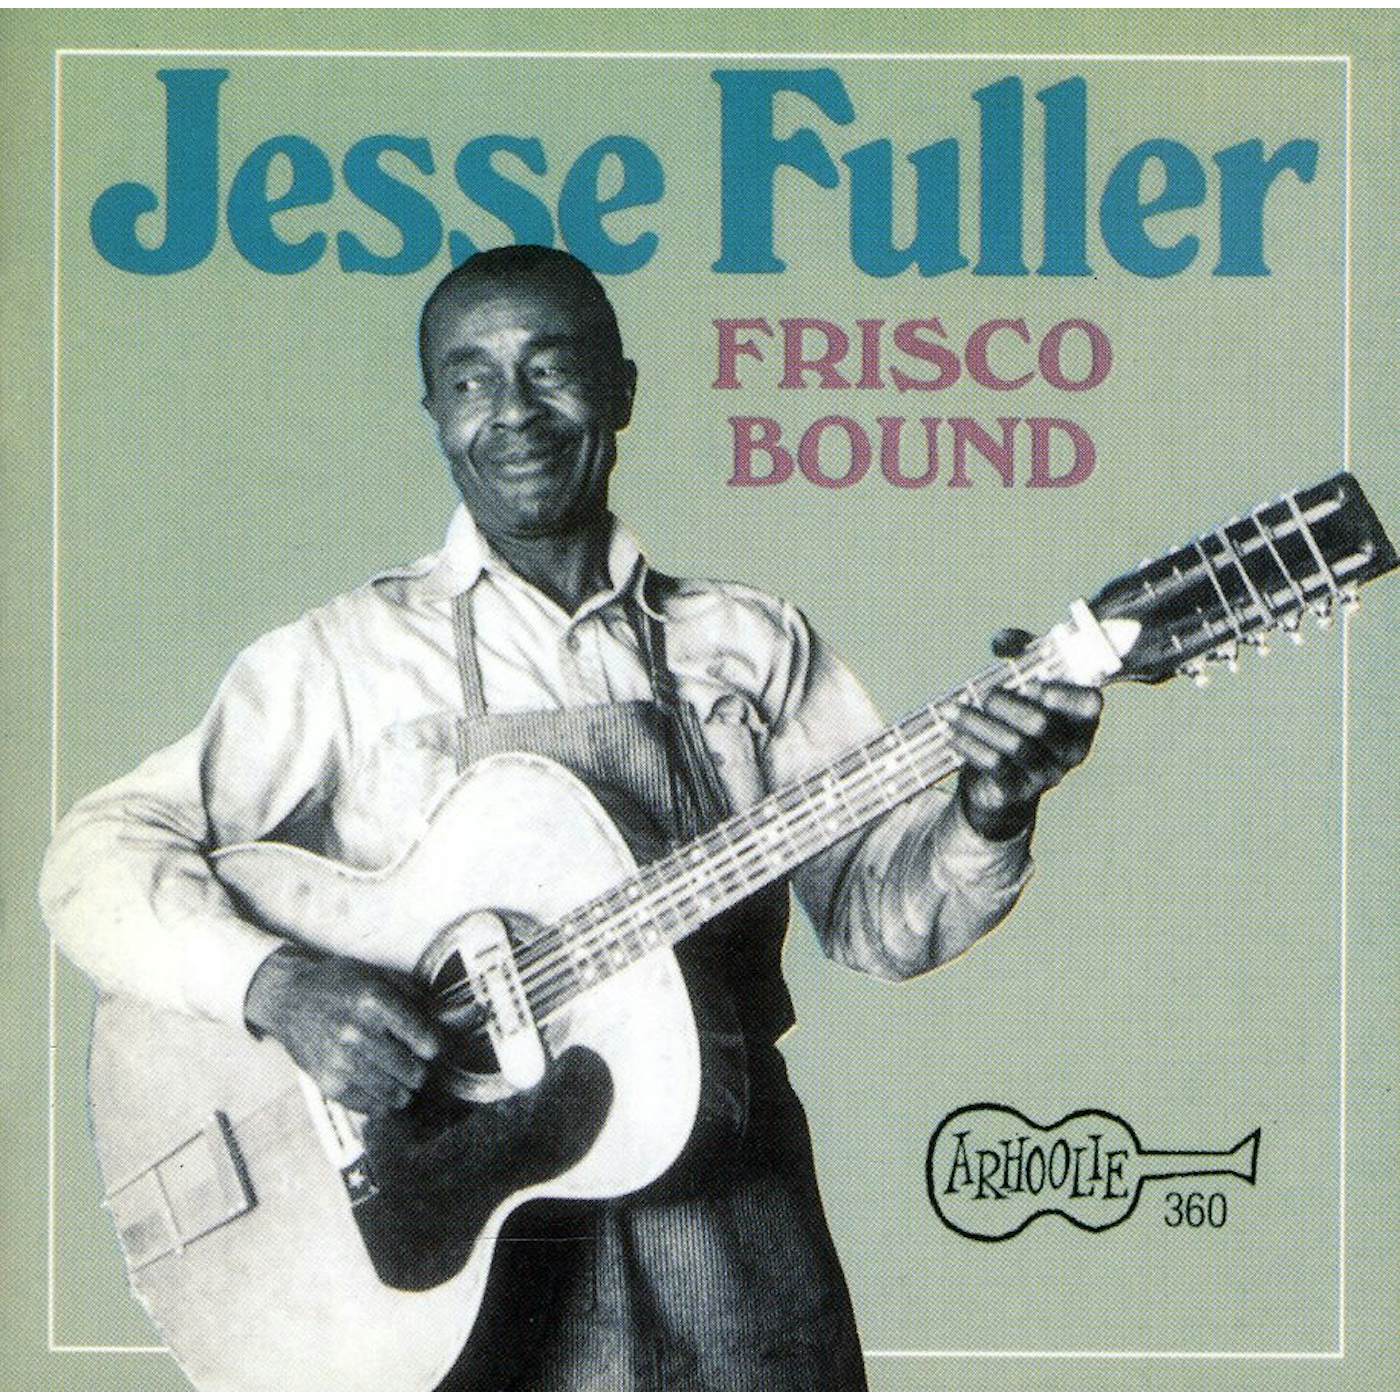 Jesse Fuller FRISCO BOUND CD